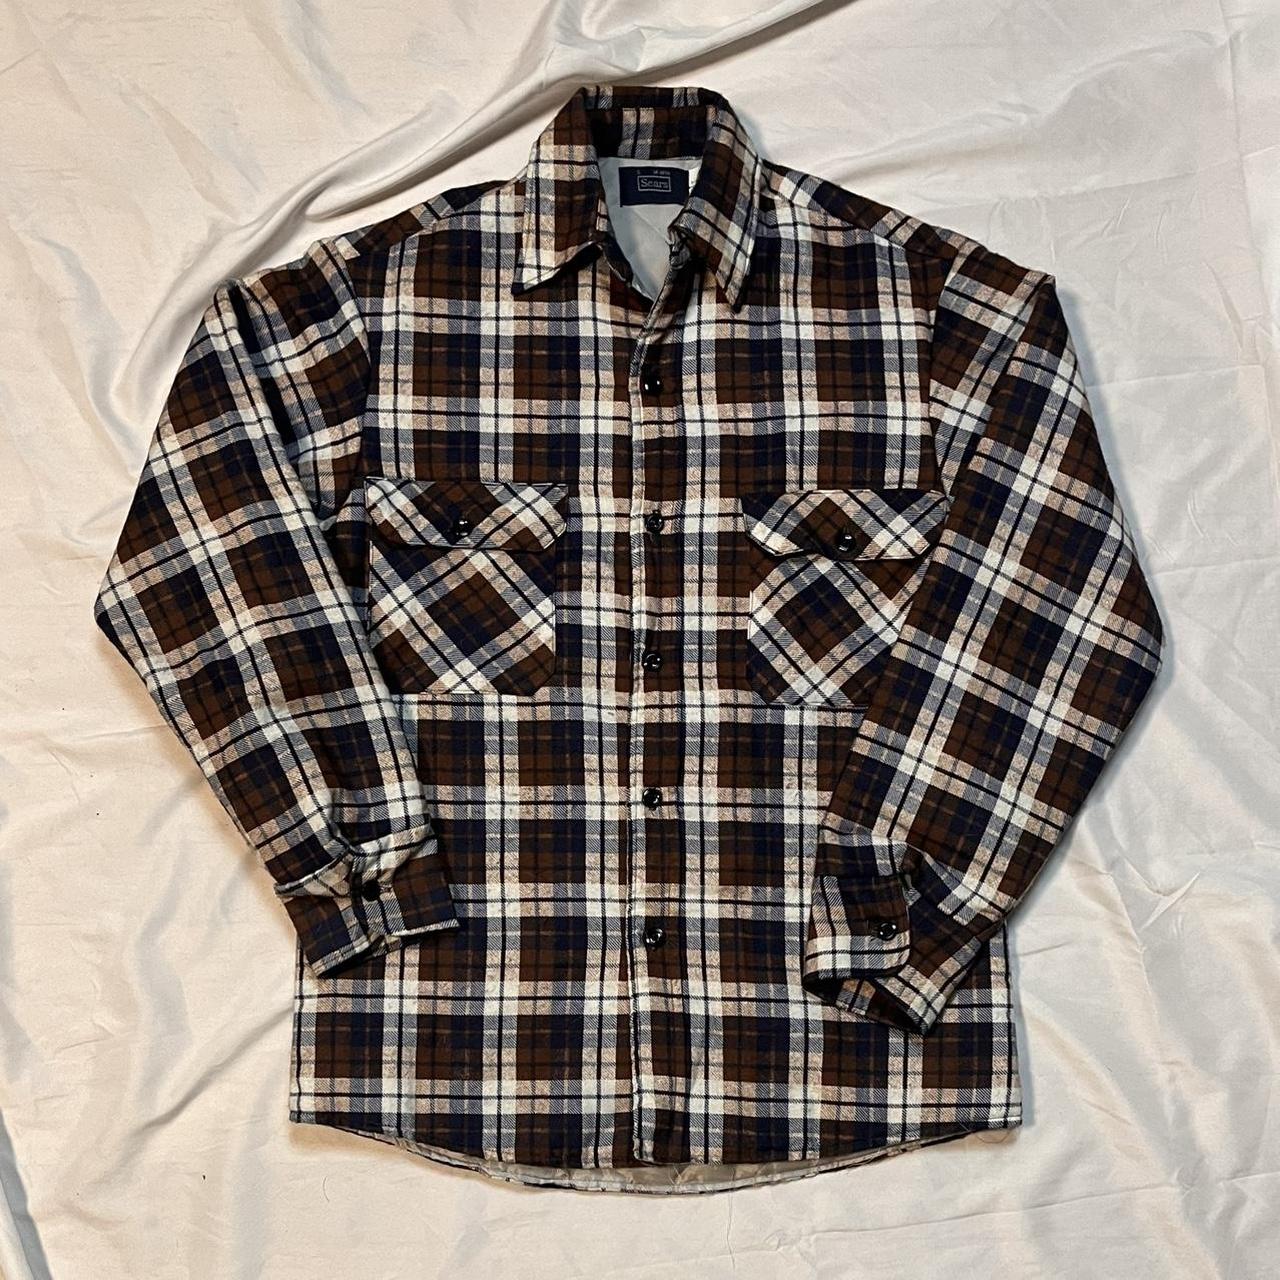 Vintage quilted flannel shirt jacket - size... - Depop